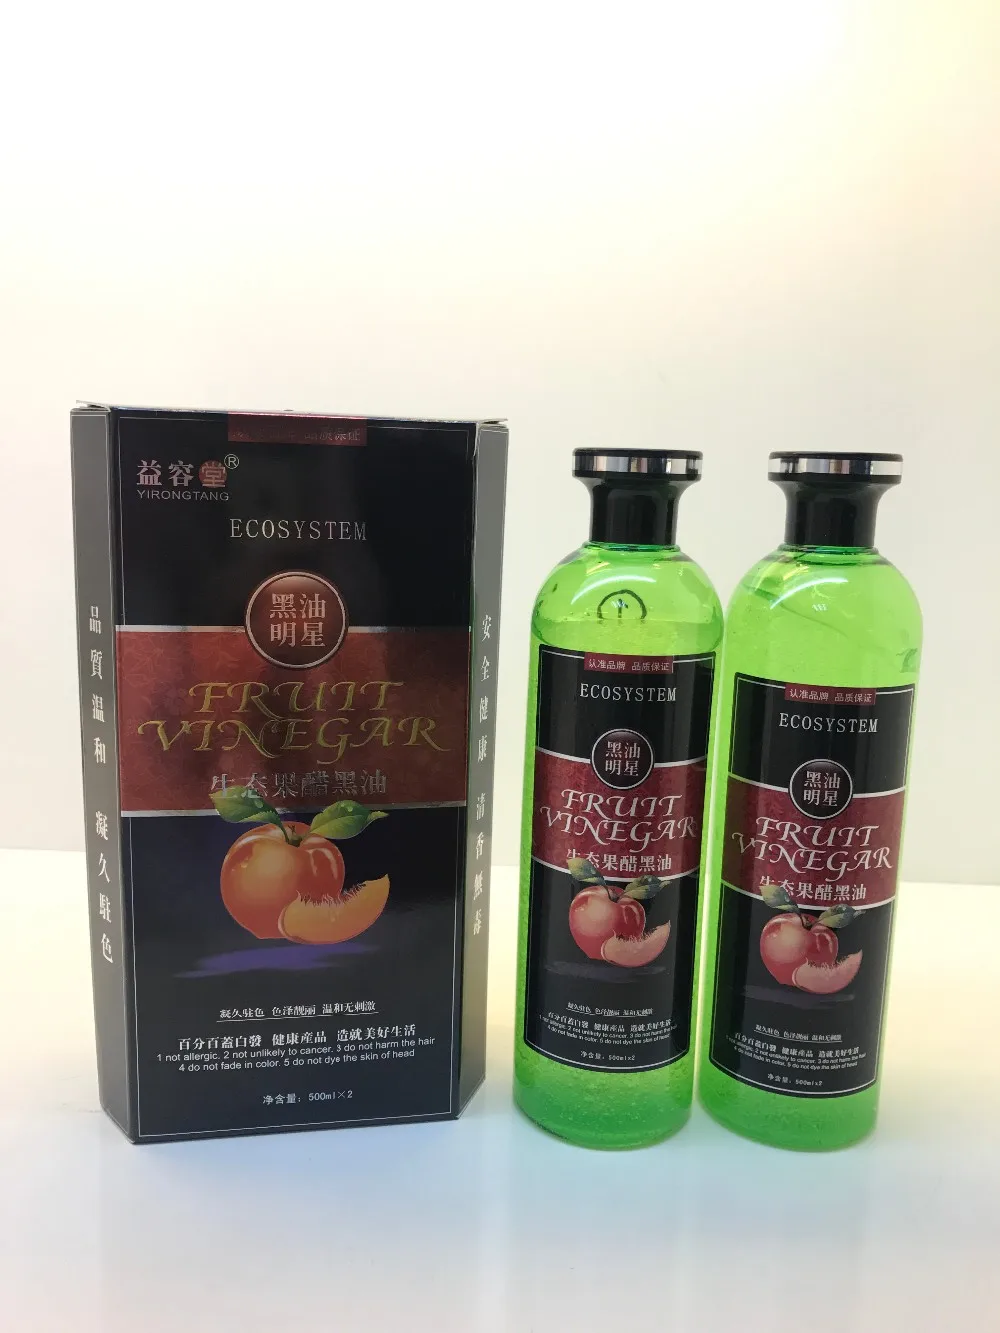 Fruit Vinegar Black Hair Dye 500ml*2 - Buy Natural Shampoo For Grey Hair,Natural  Black Hair Dyes,Natural Hair Black Color Oil Product on 